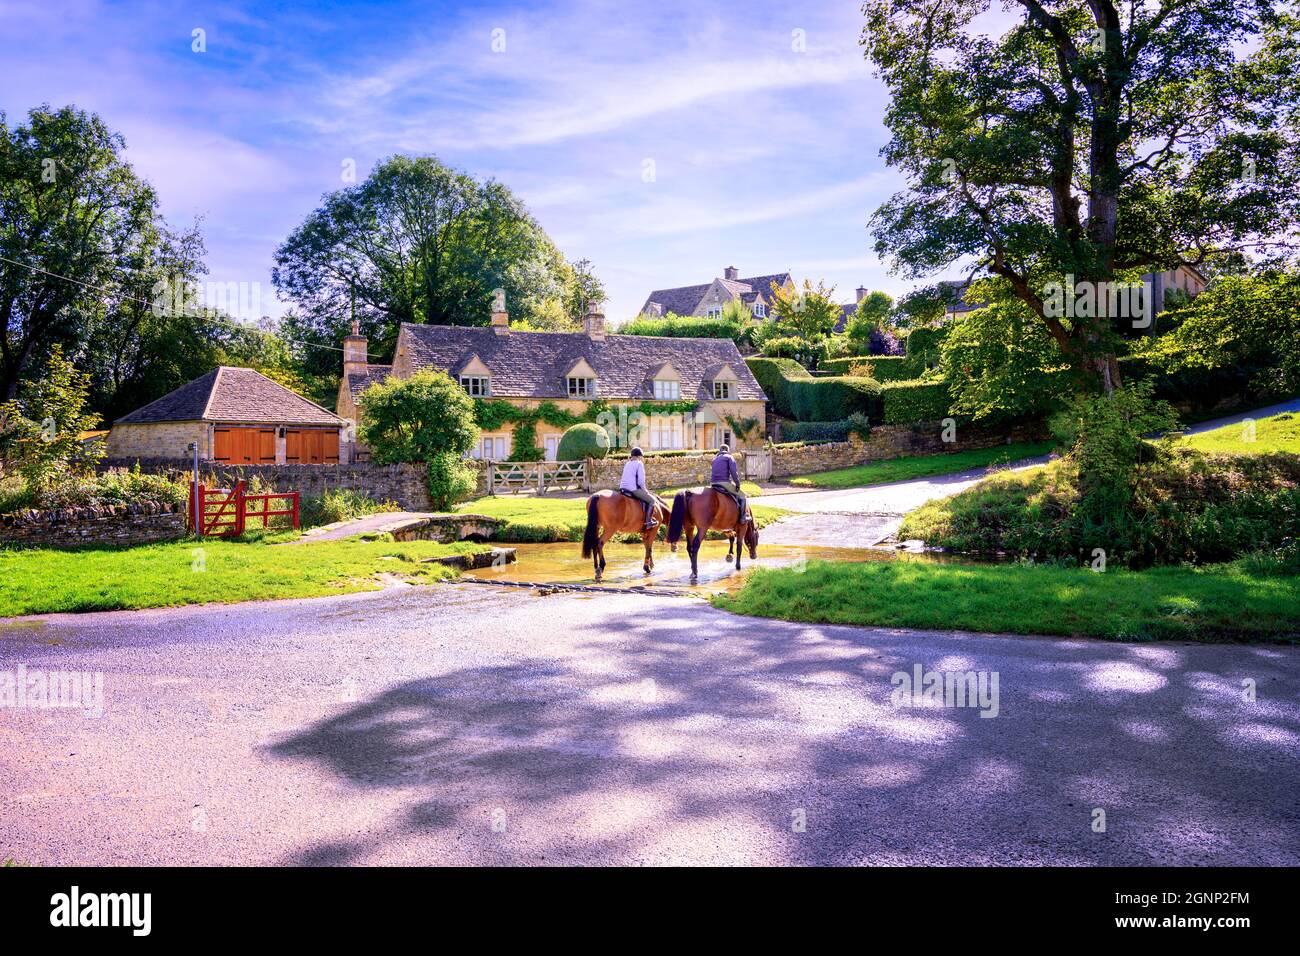 Deux chevaux et cavaliers traversant ford en face de la rivière traditionnelle en pierre construit Cotswold village cottage en arrière-plan. Upper Slaughter Gloucestershire Royaume-Uni Banque D'Images